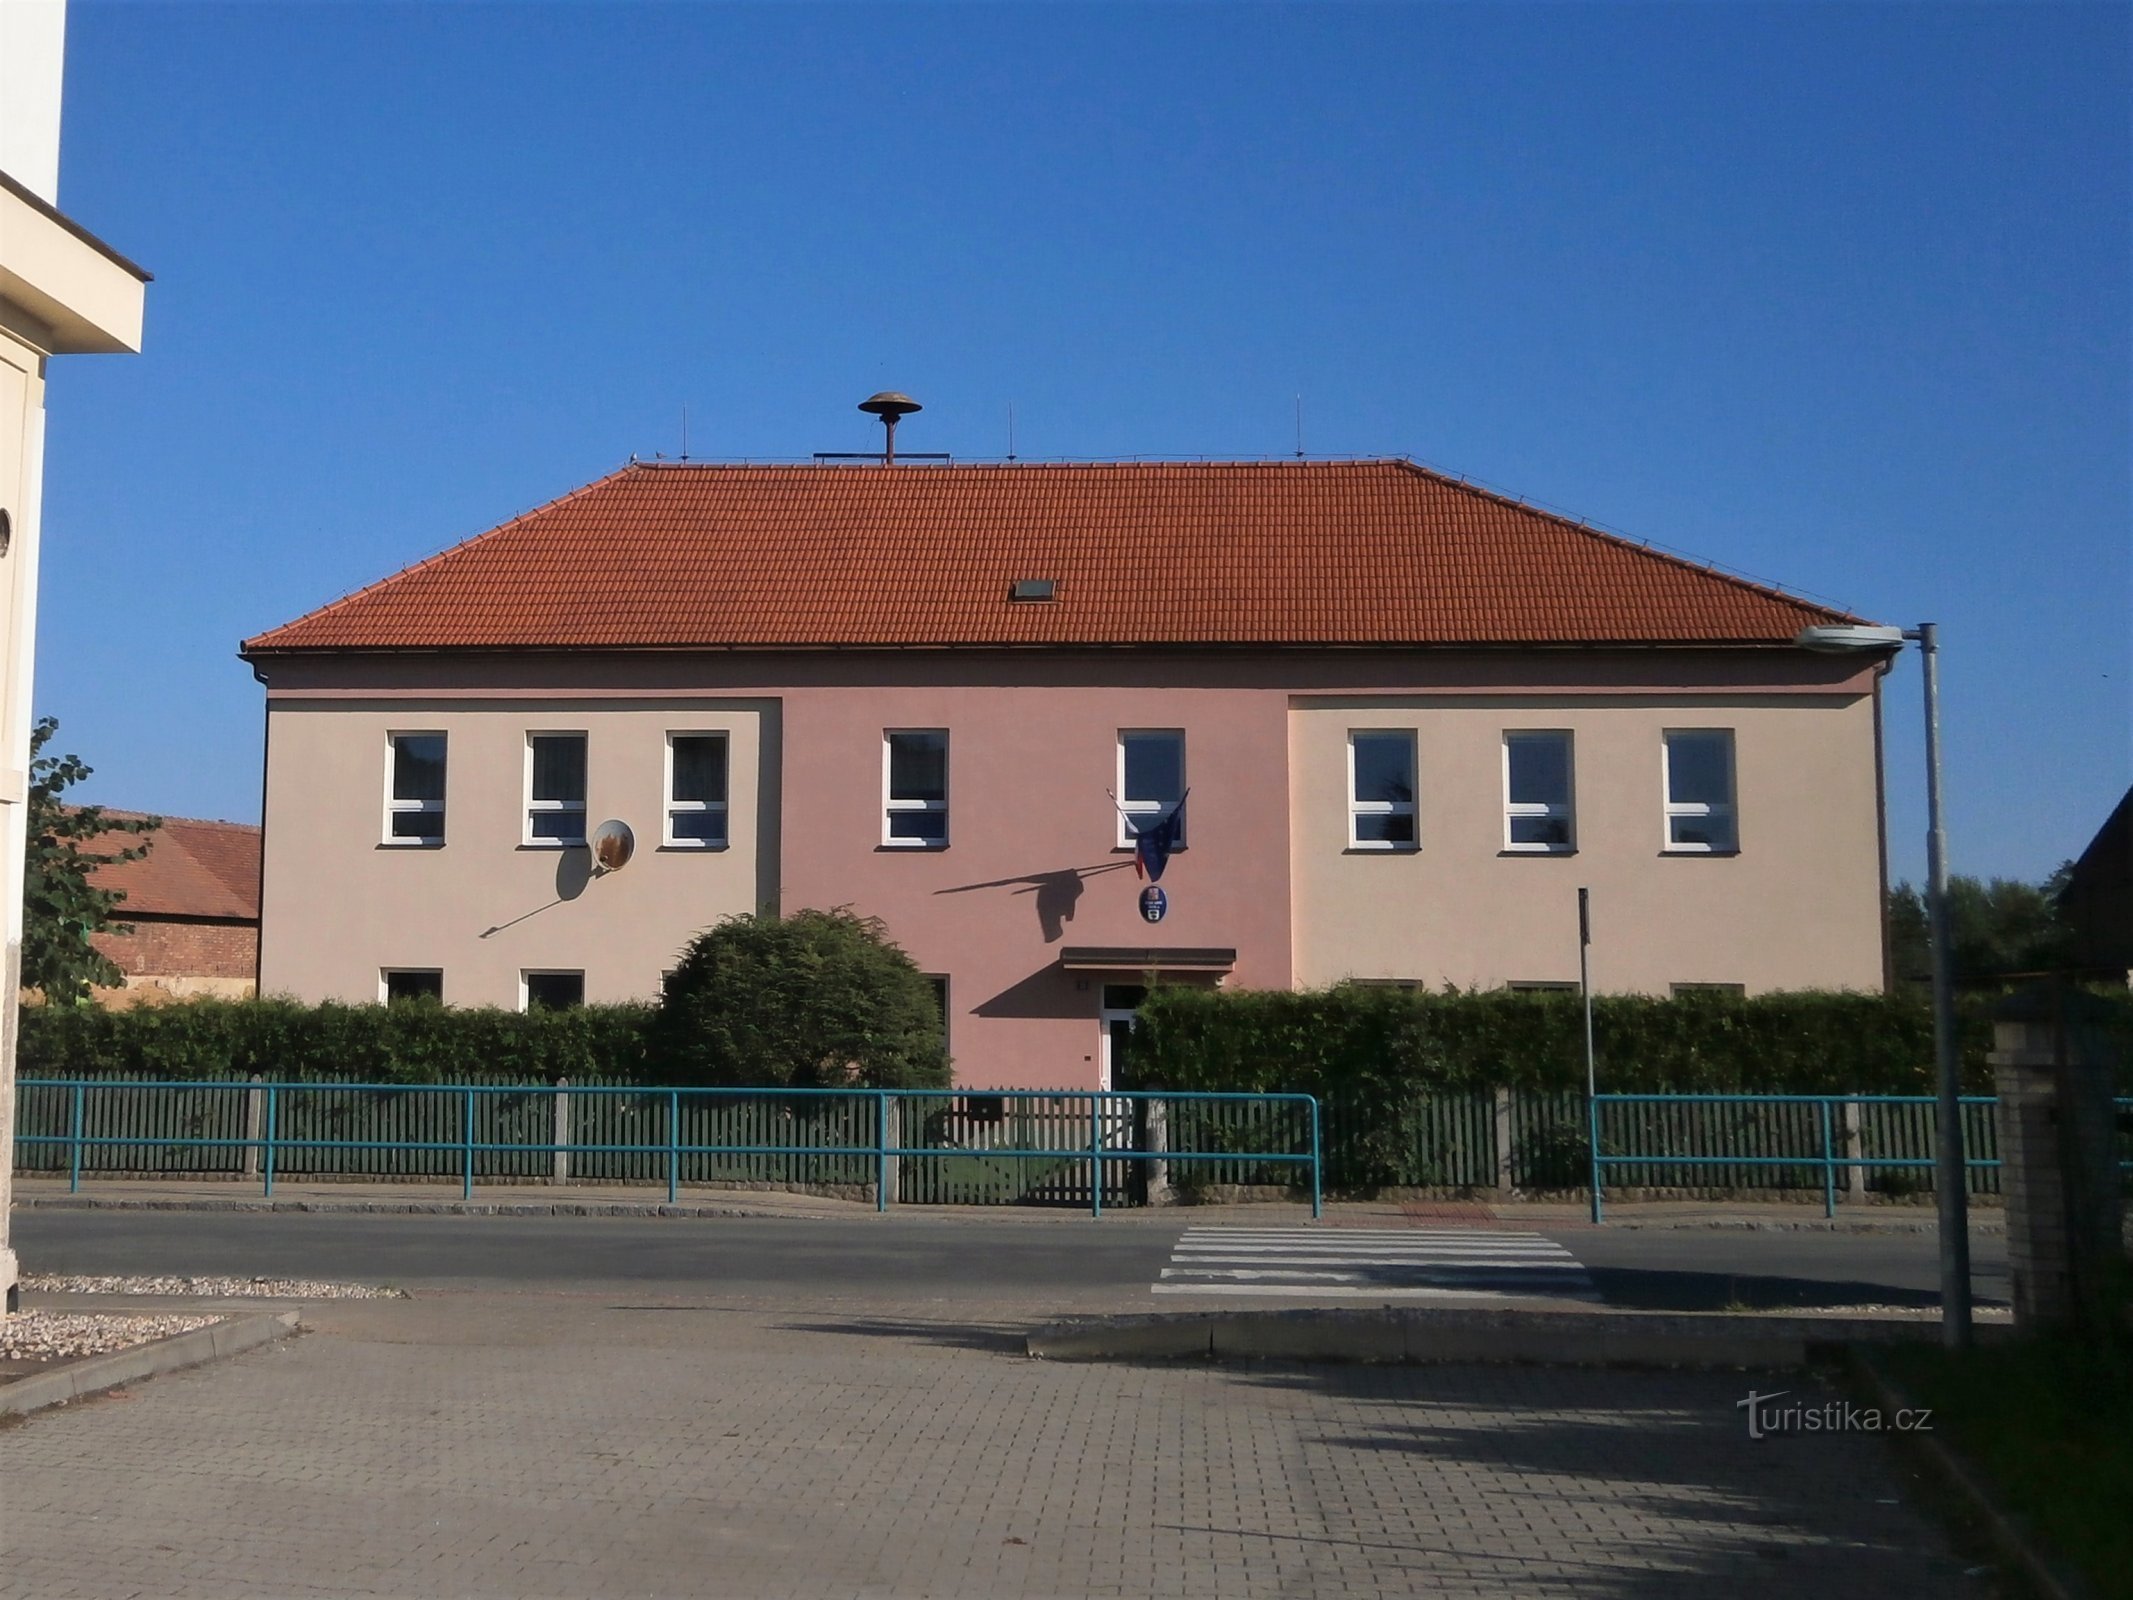 Trường học (Staré Ždánice, 30.7.2017/XNUMX/XNUMX)